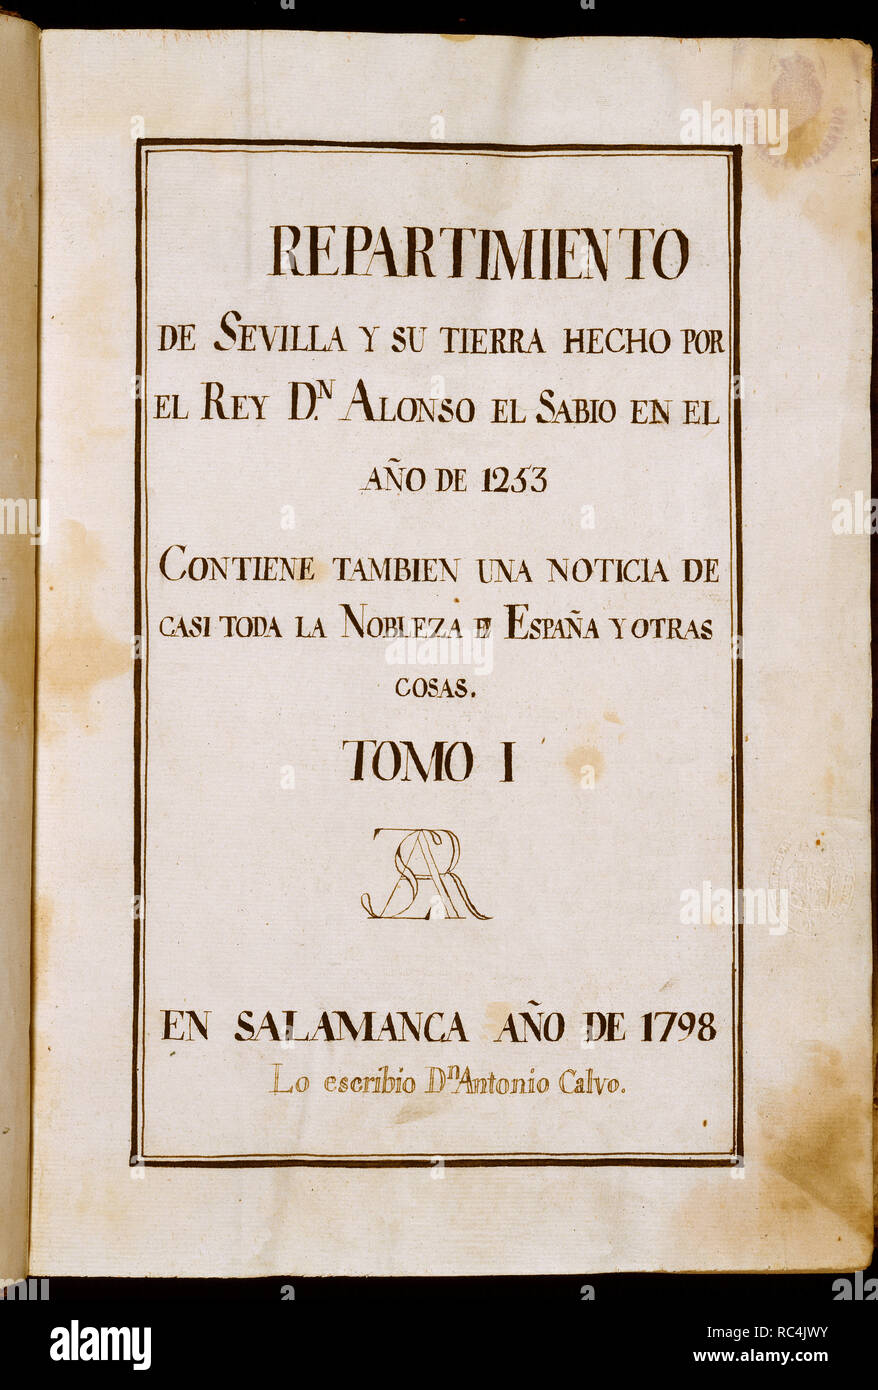 REPARTIMIENTO DE SEVILLA Y SU TIERRA POR Alfonso X El Sabio EN EL AÑO 1253 - TOMO I-1798. Autor: CALVO, Antonio. Lage: SENADO - BIBLIOTECA - coleccion. MADRID. Stockfoto